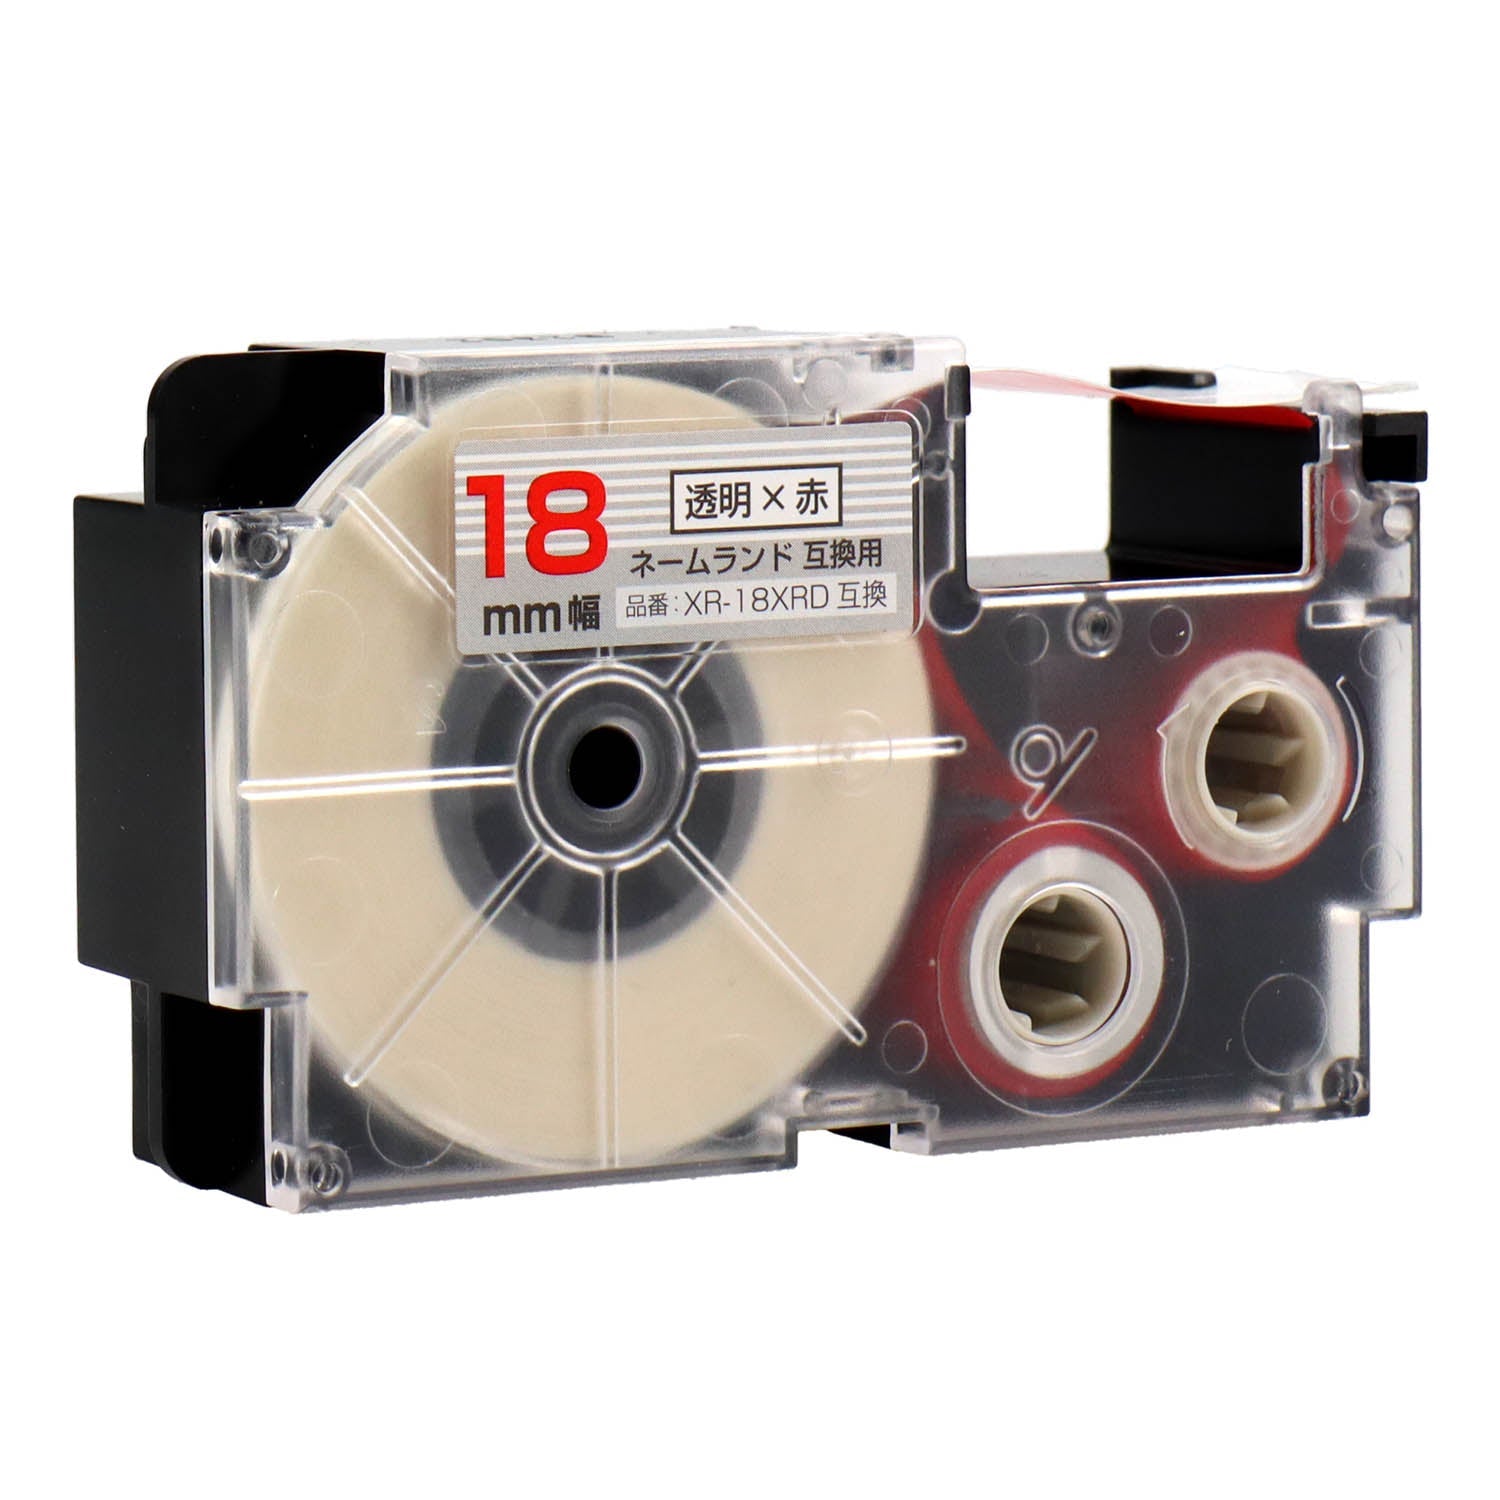 ネームランド用互換テープカートリッジ 透明×赤文字 18mm